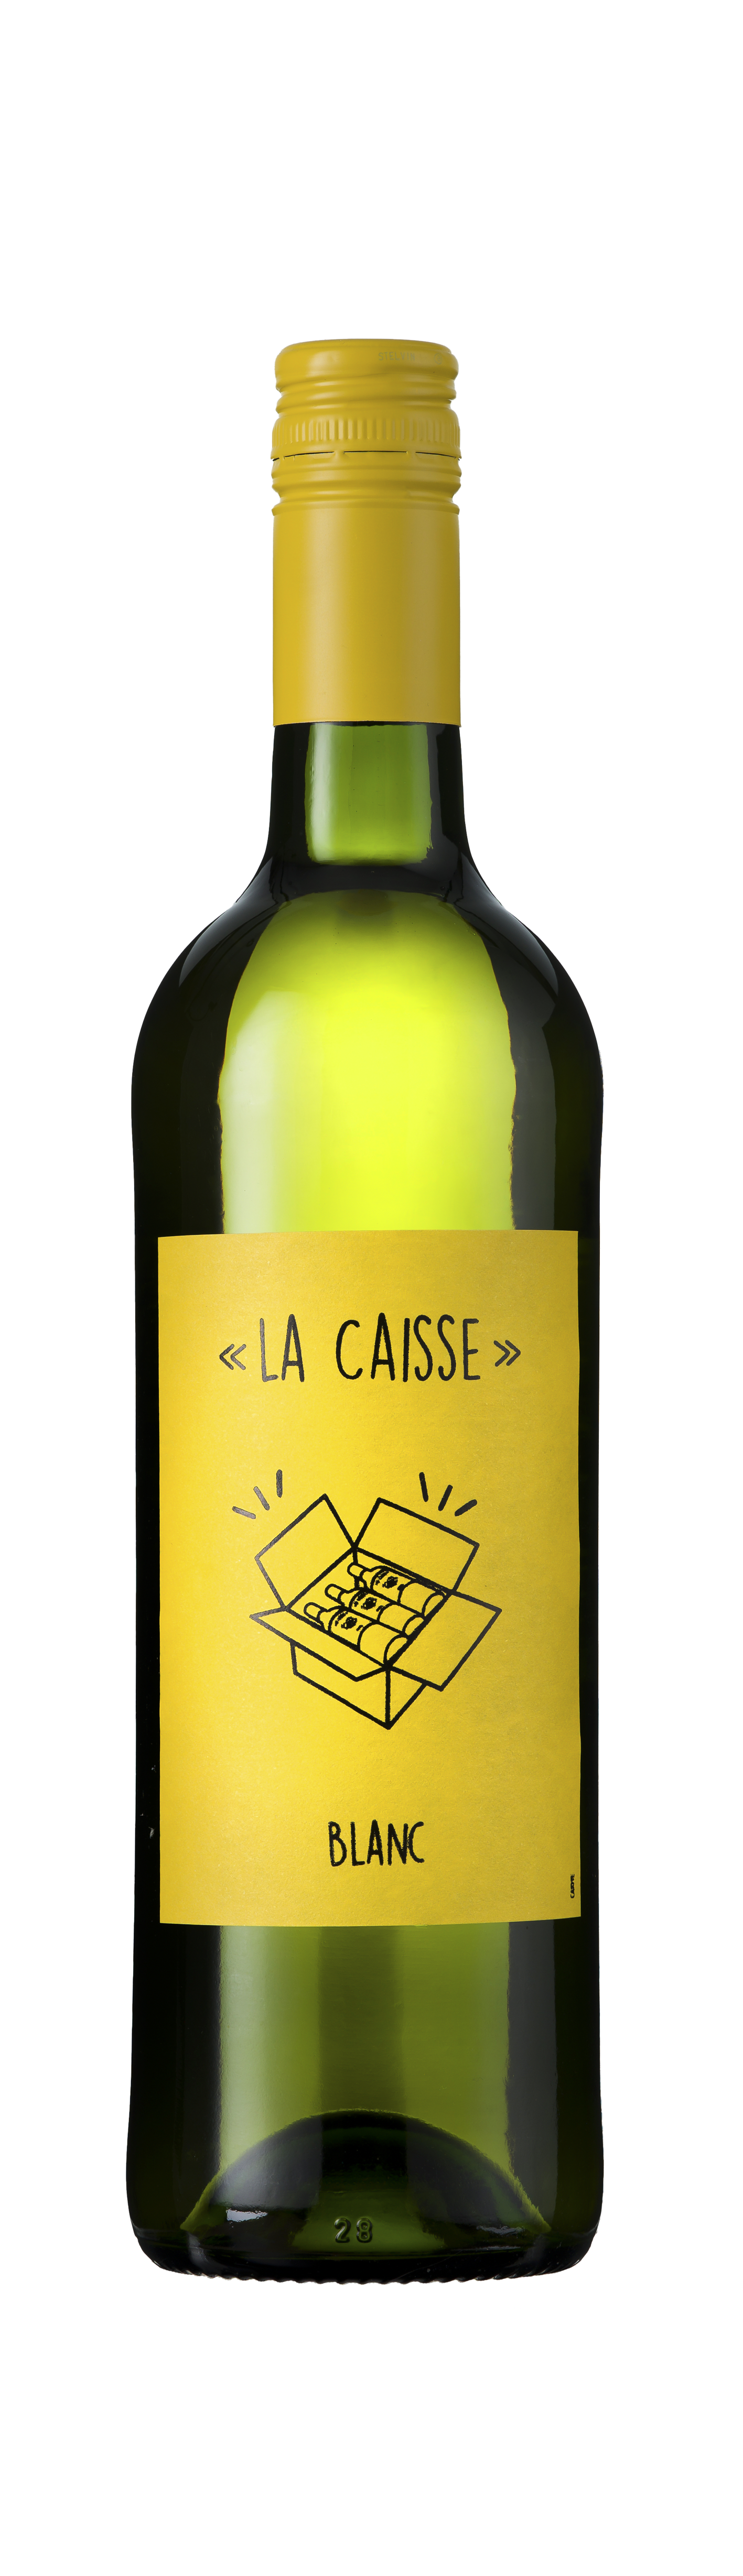 Bottle shot - La Caisse, Blanc, Vin de France, France